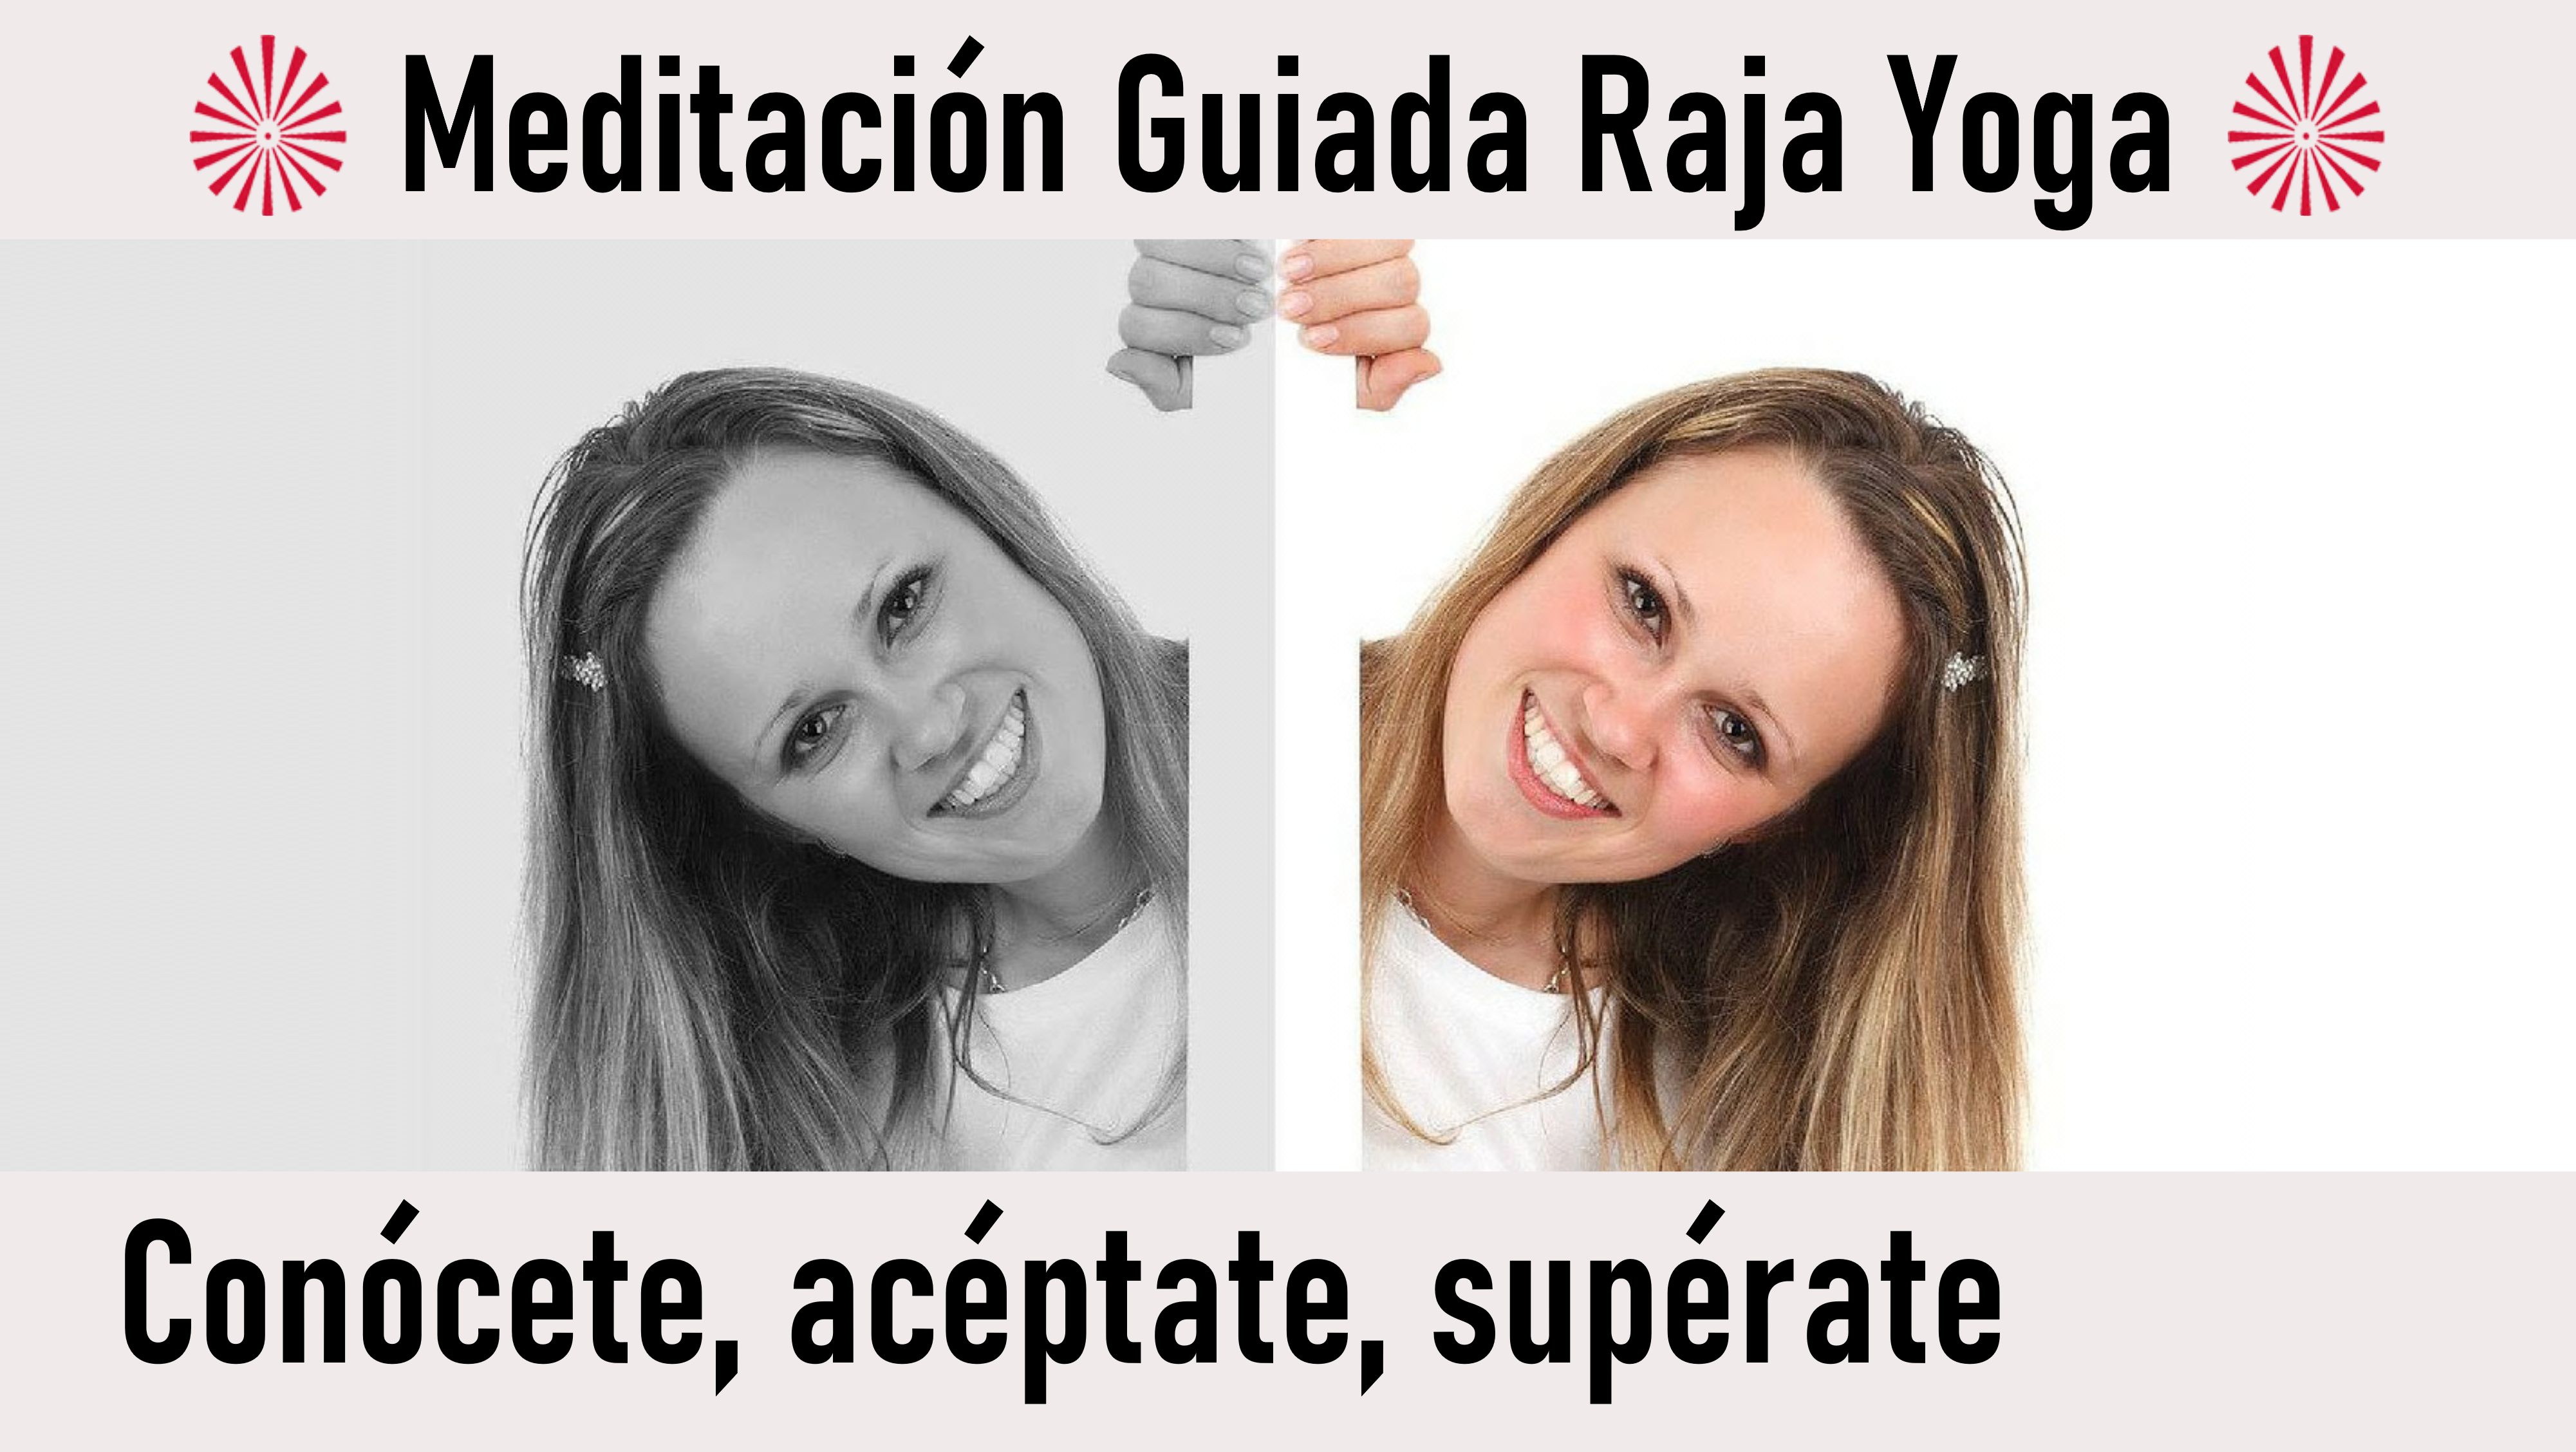 Meditación Raja Yoga: Conócete, acéptate, supérate (28 Julio 2020) On-line desde Mallorca